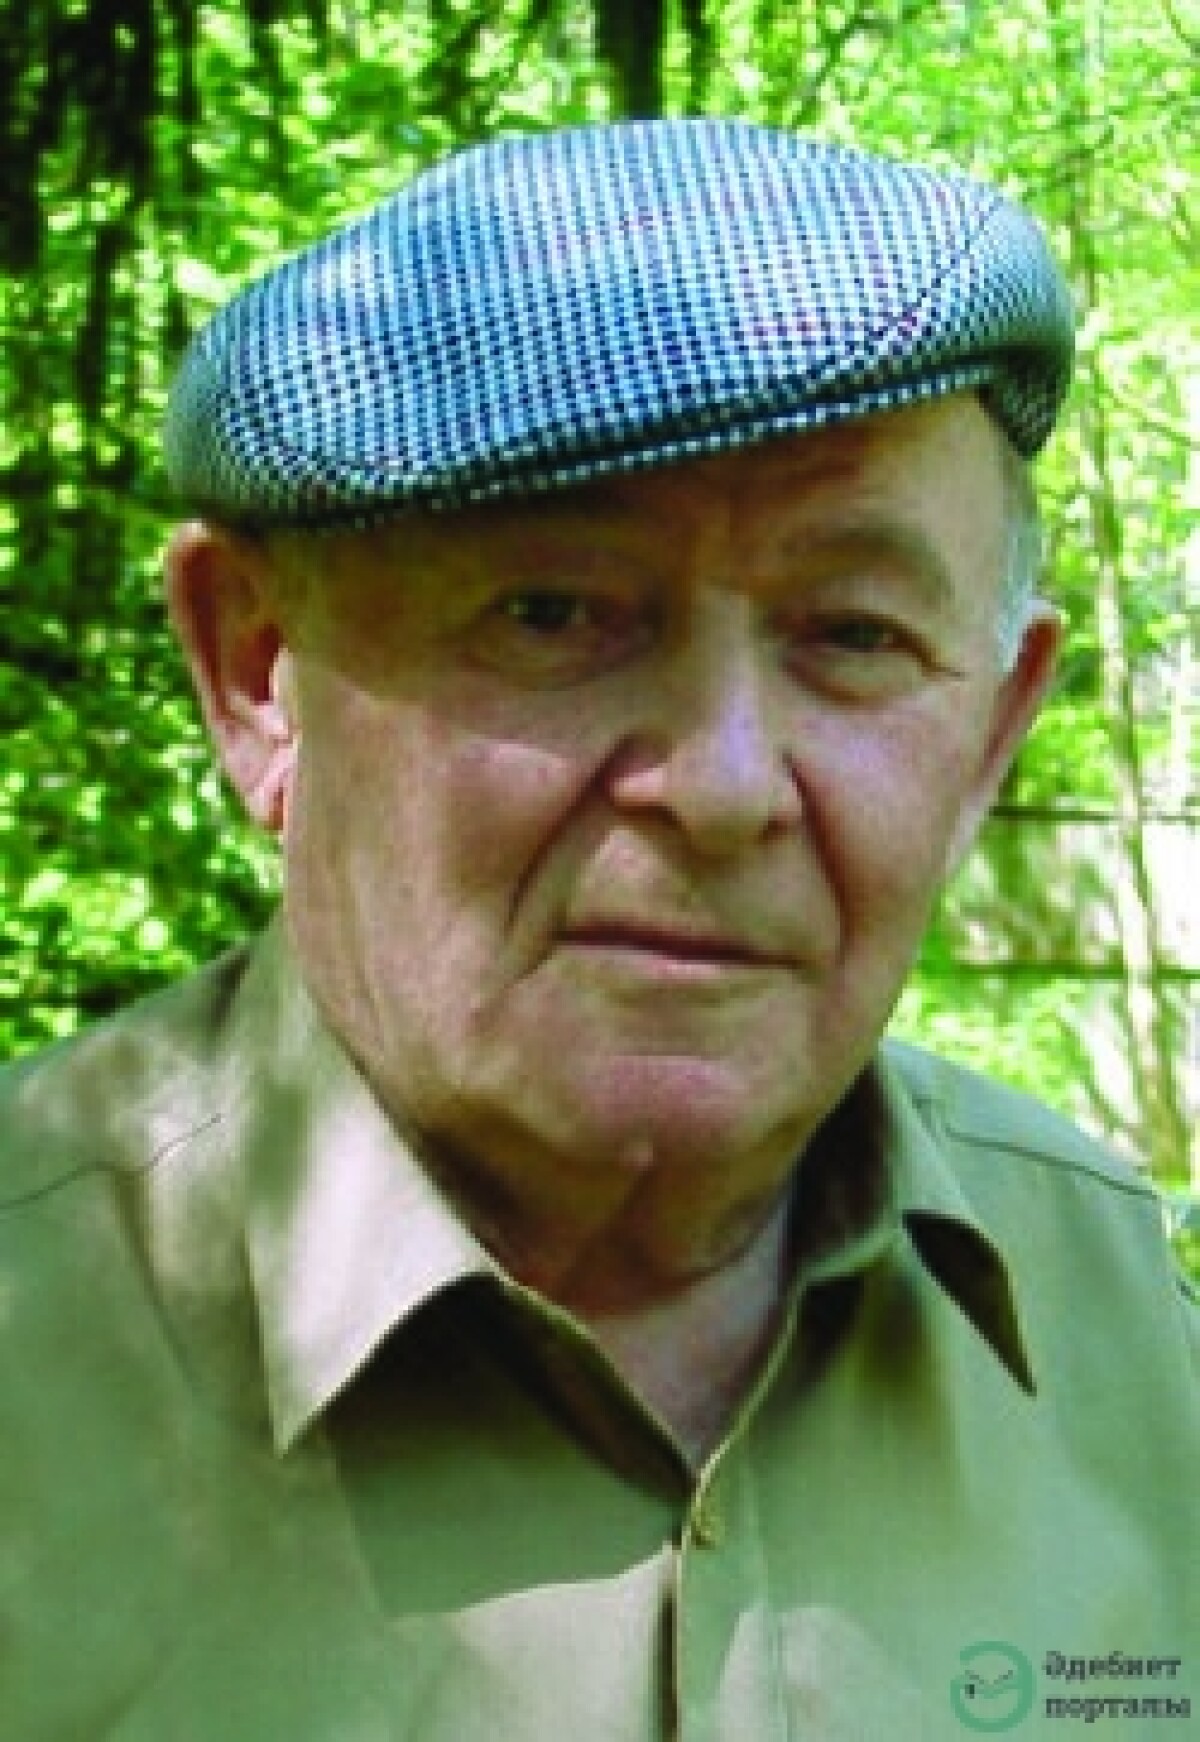 Константин Яковлевич Ваншенкин